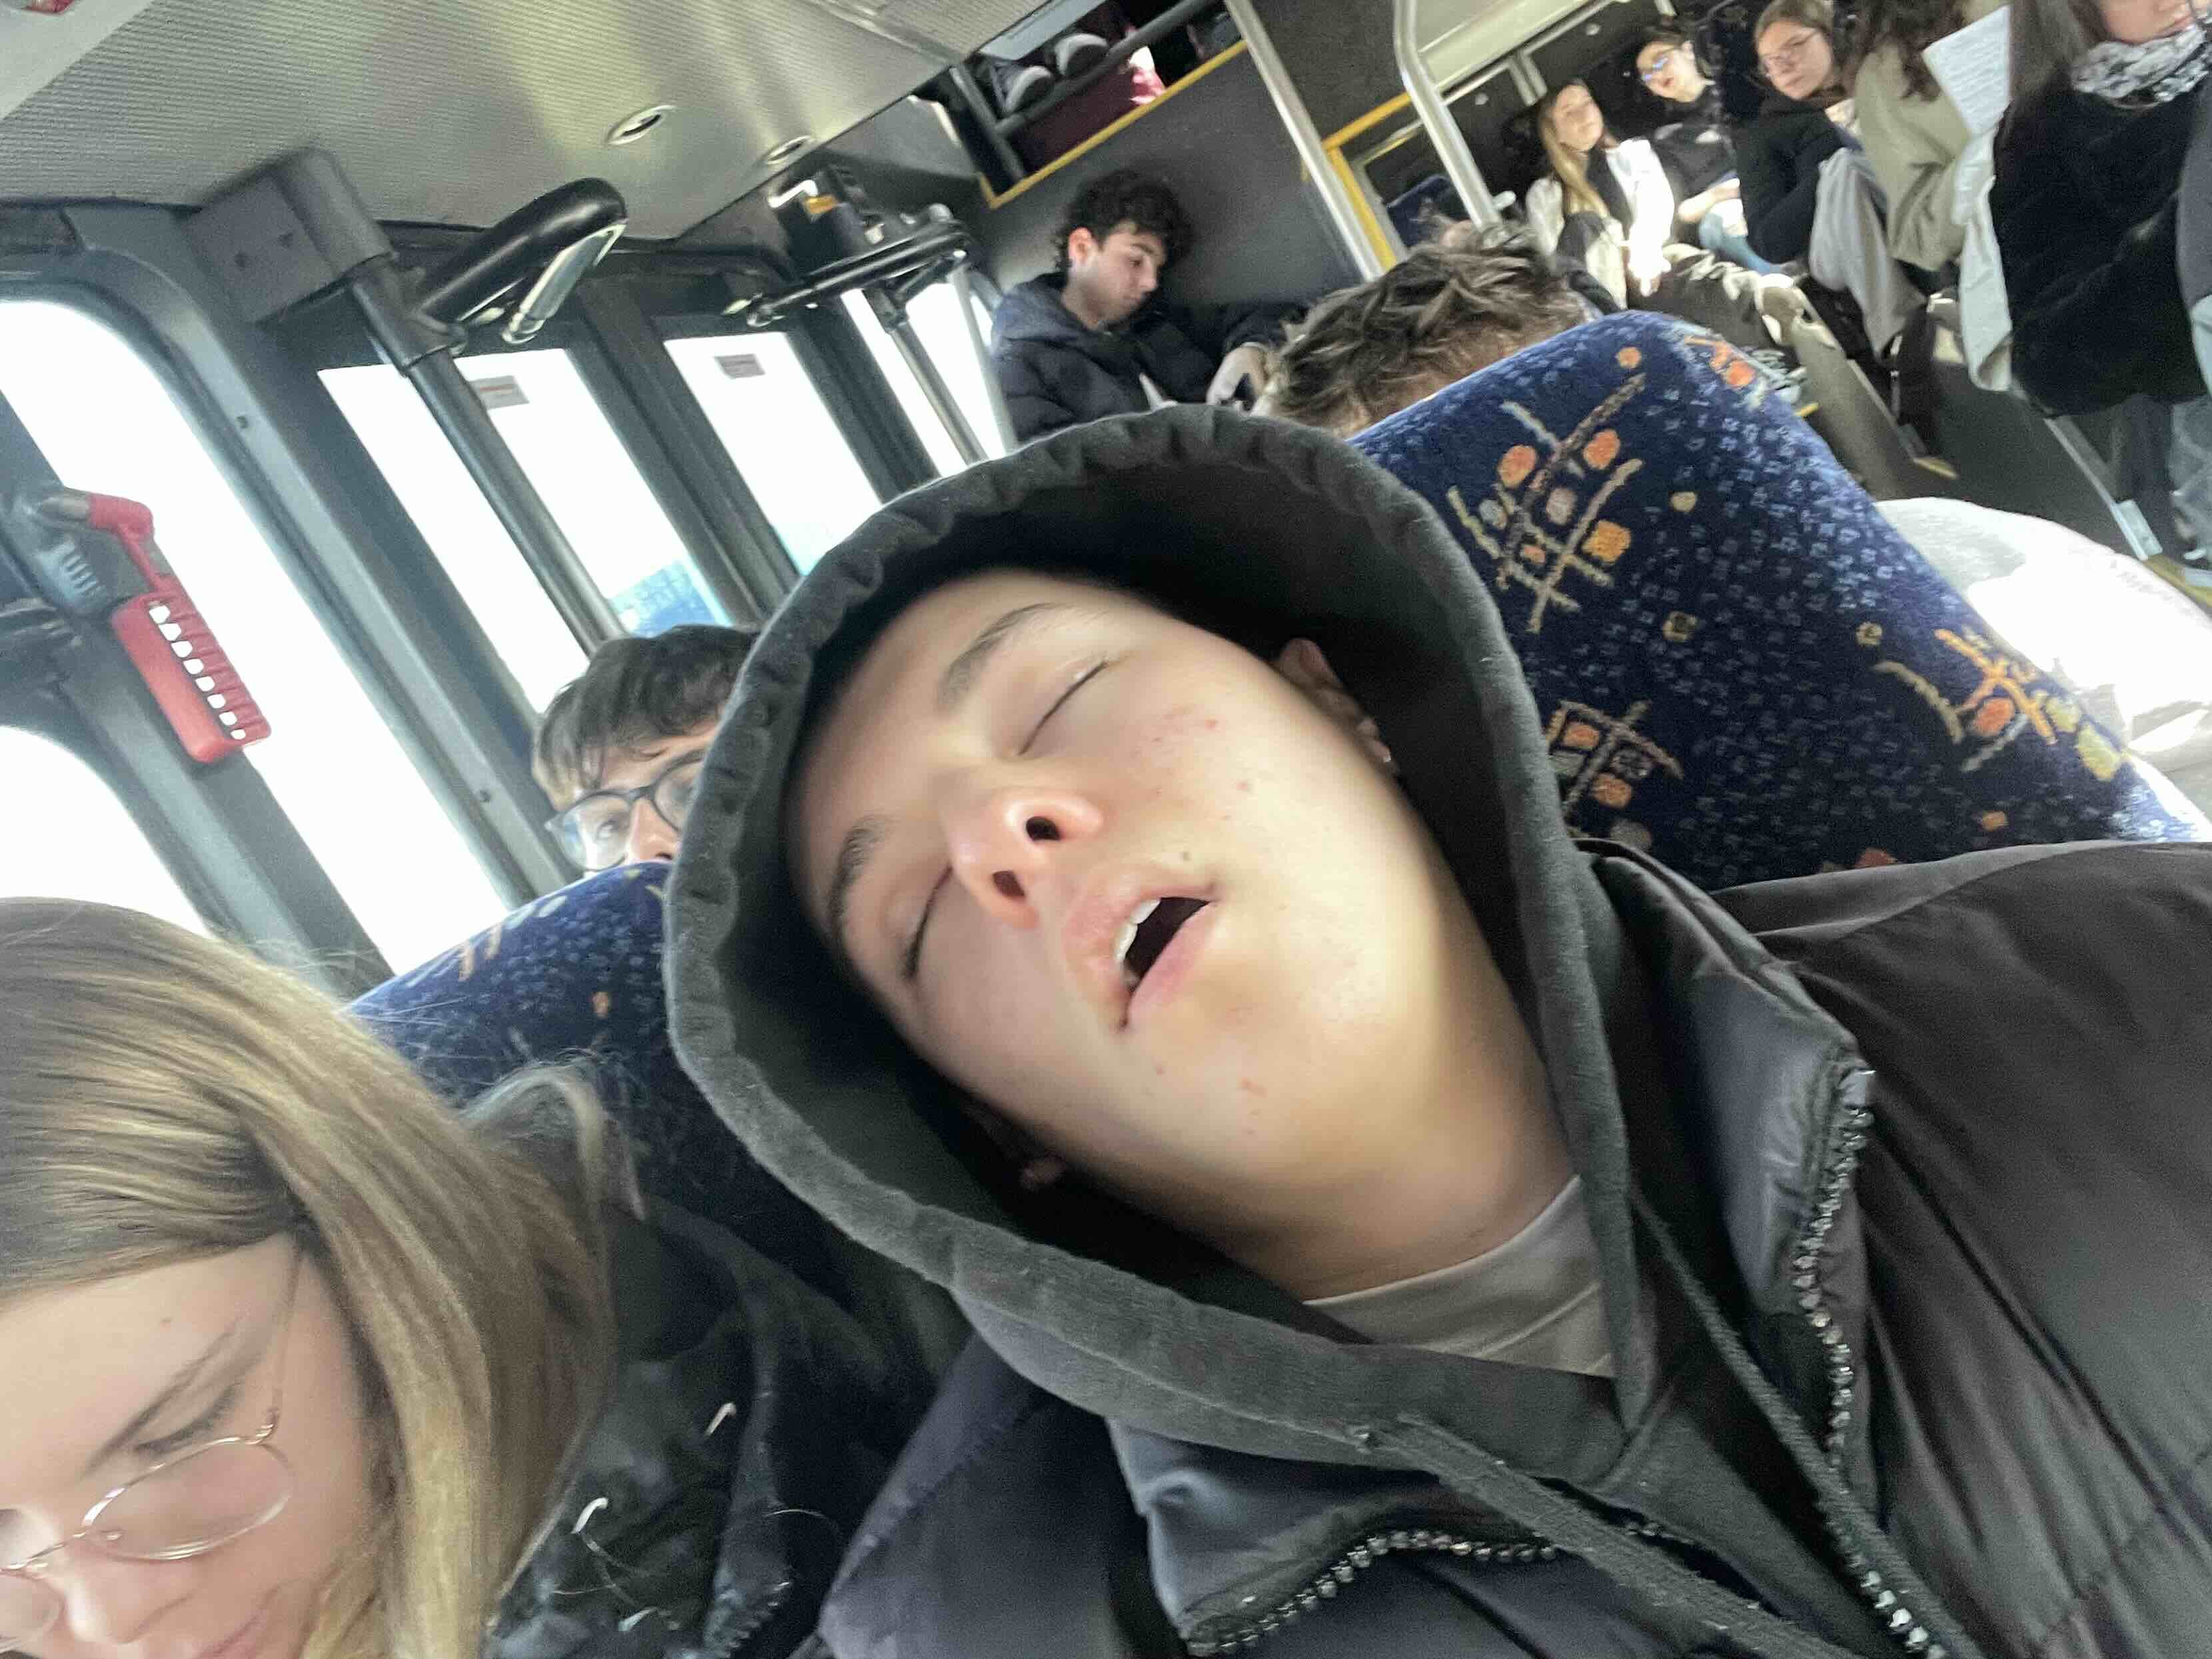 Ultima notizia: Sanchi dorme a bocca aperta sul bus